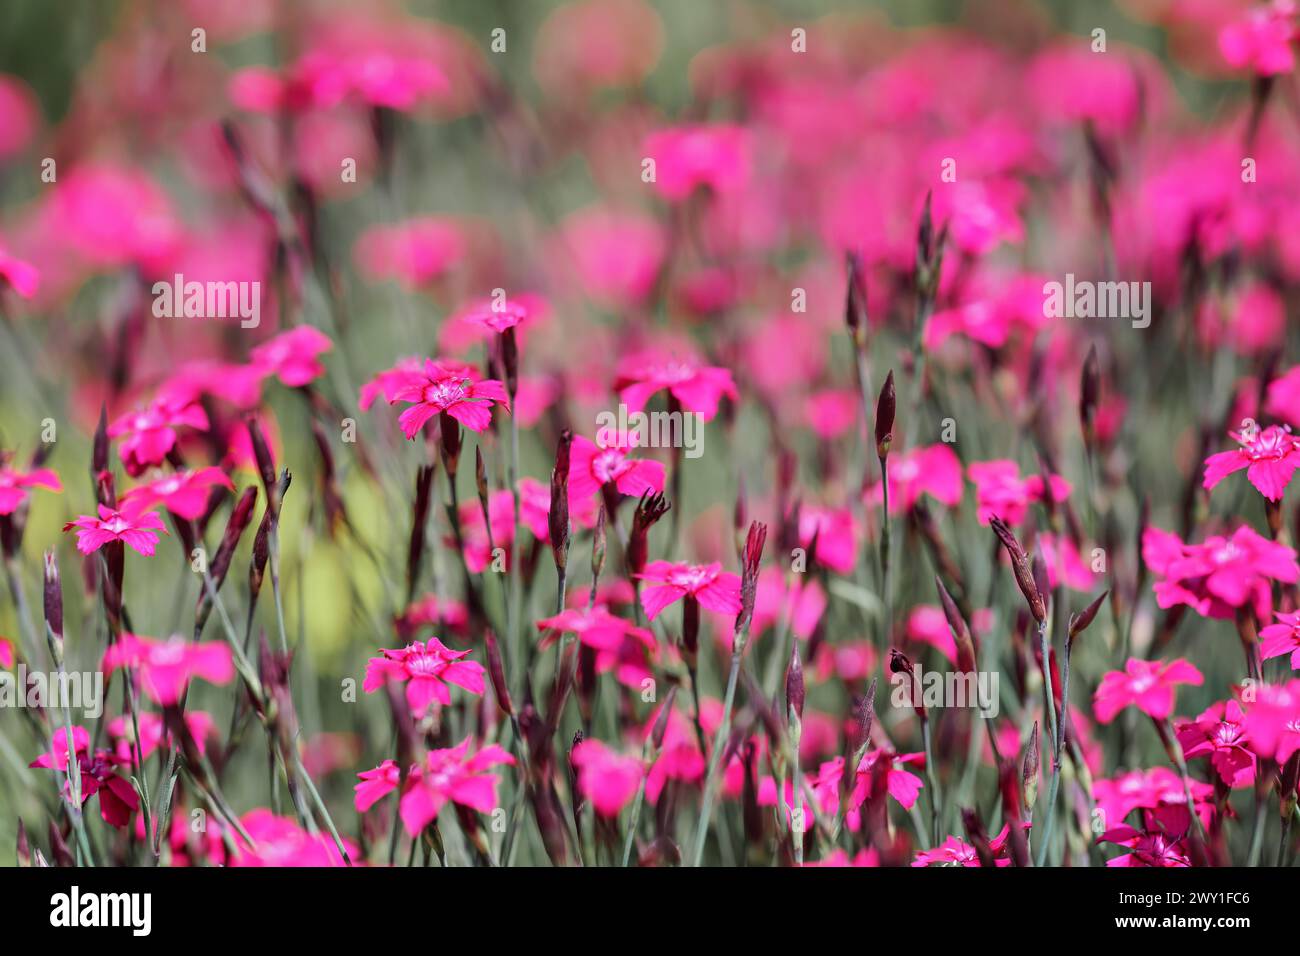 Faible profondeur de champ, peu de fleurs sont mises au point. Fleurs d'œillet de jardin rose vif sur prairie verte. Fond de printemps abstrait Banque D'Images